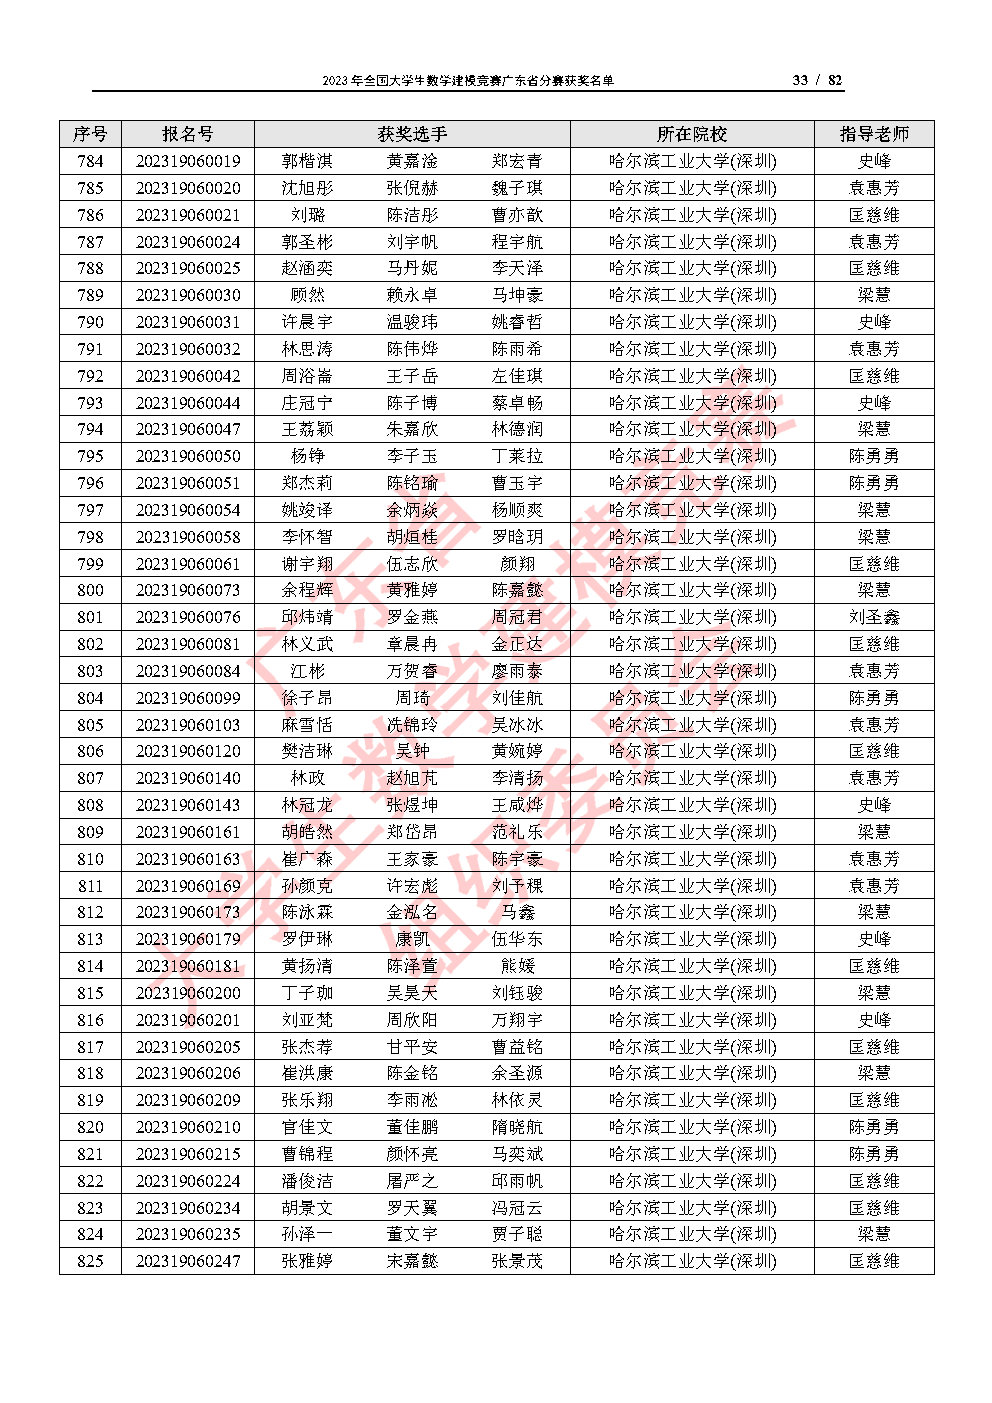 2023年全国大学生数学建模竞赛广东省分赛获奖名单_Page33.jpg